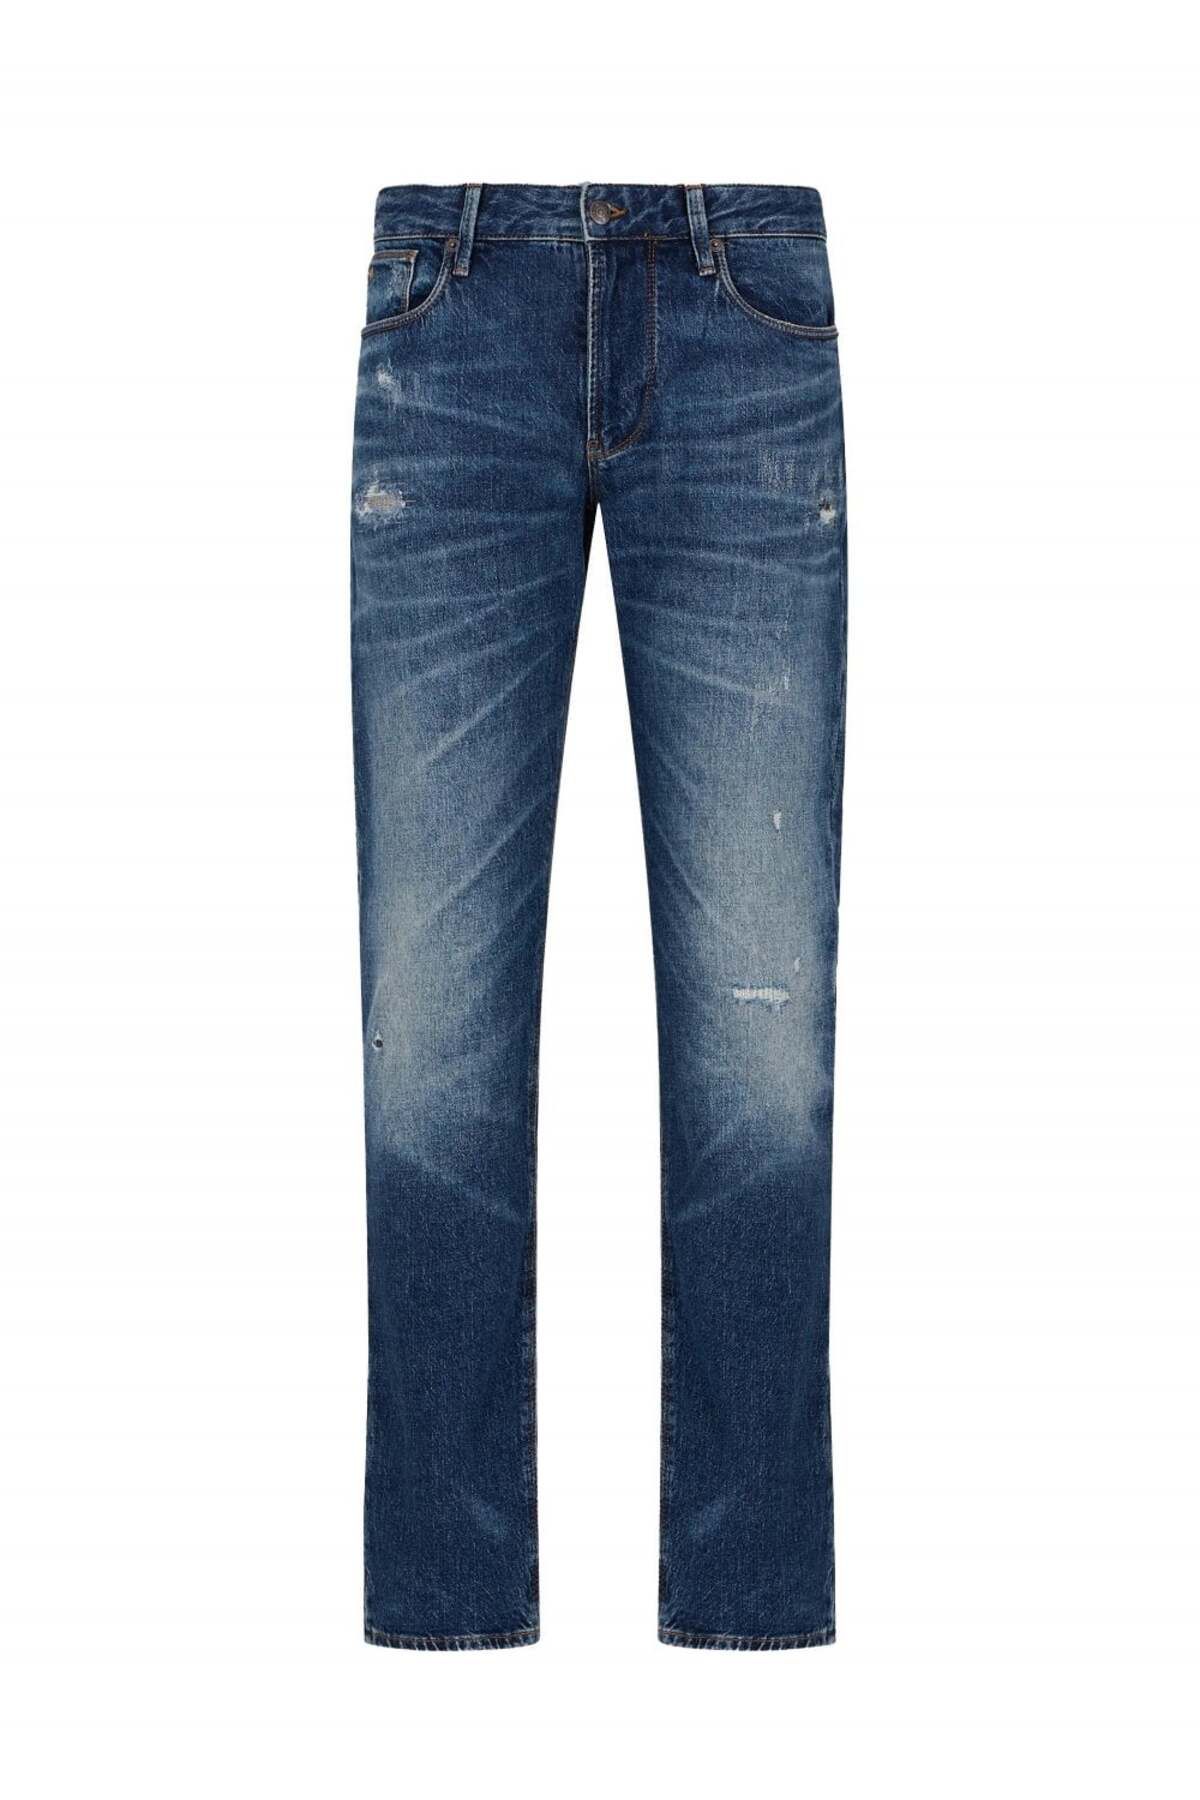 Emporio Armani Erkek Slim Fit Normal Bel Mavi Jeans 3D1J06 1D06Z-0942